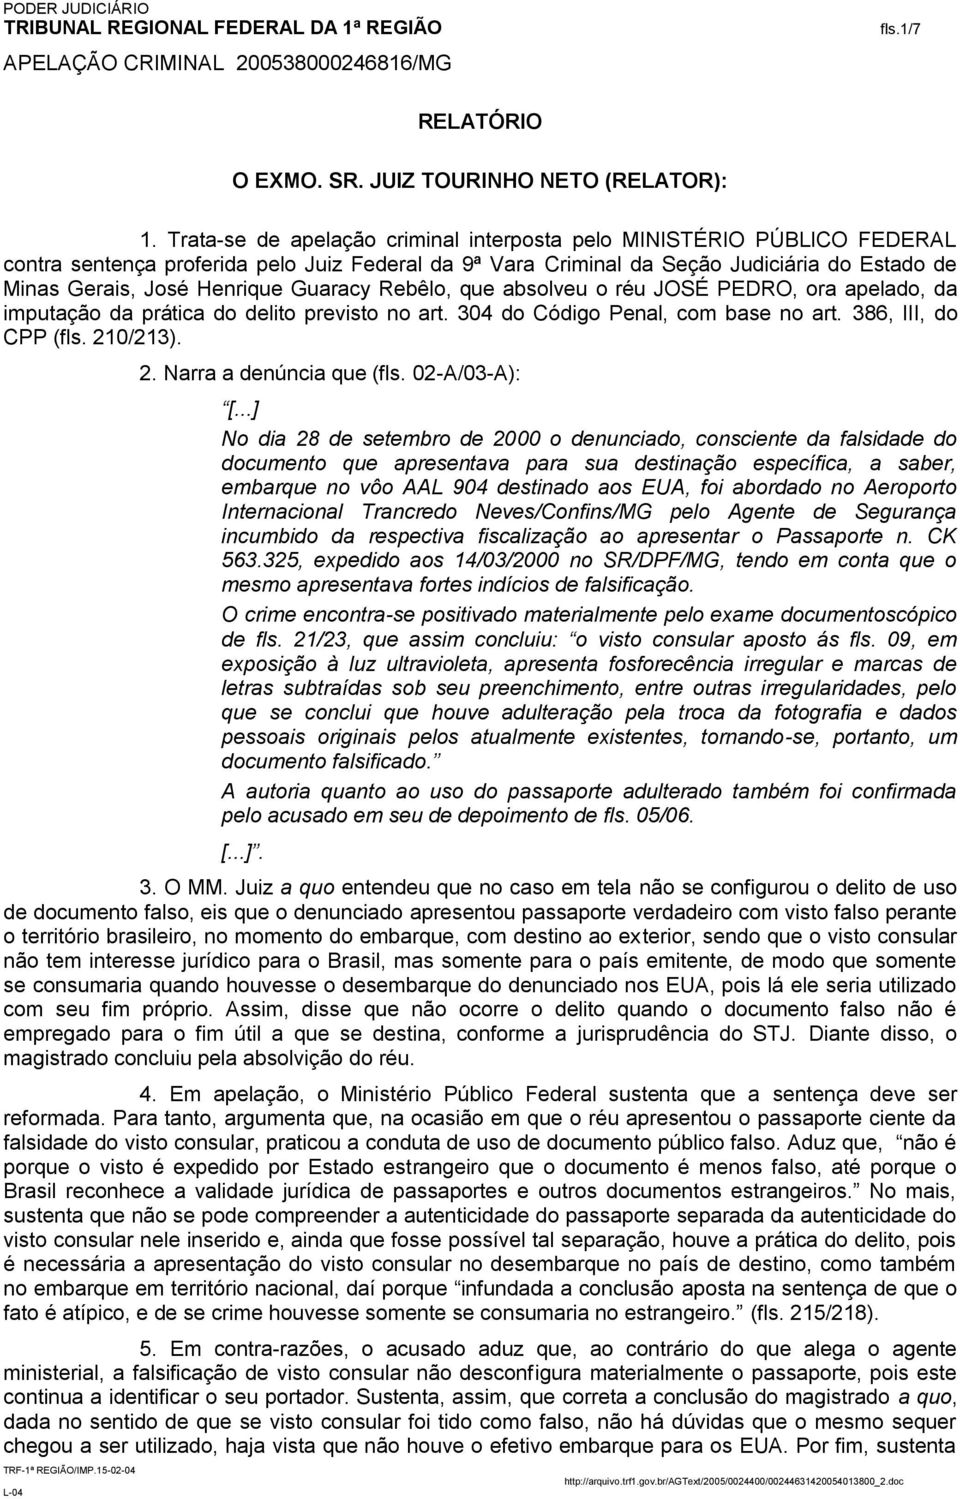 Guaracy Rebêlo, que absolveu o réu JOSÉ PEDRO, ora apelado, da imputação da prática do delito previsto no art. 304 do Código Penal, com base no art. 386, III, do CPP (fls. 21